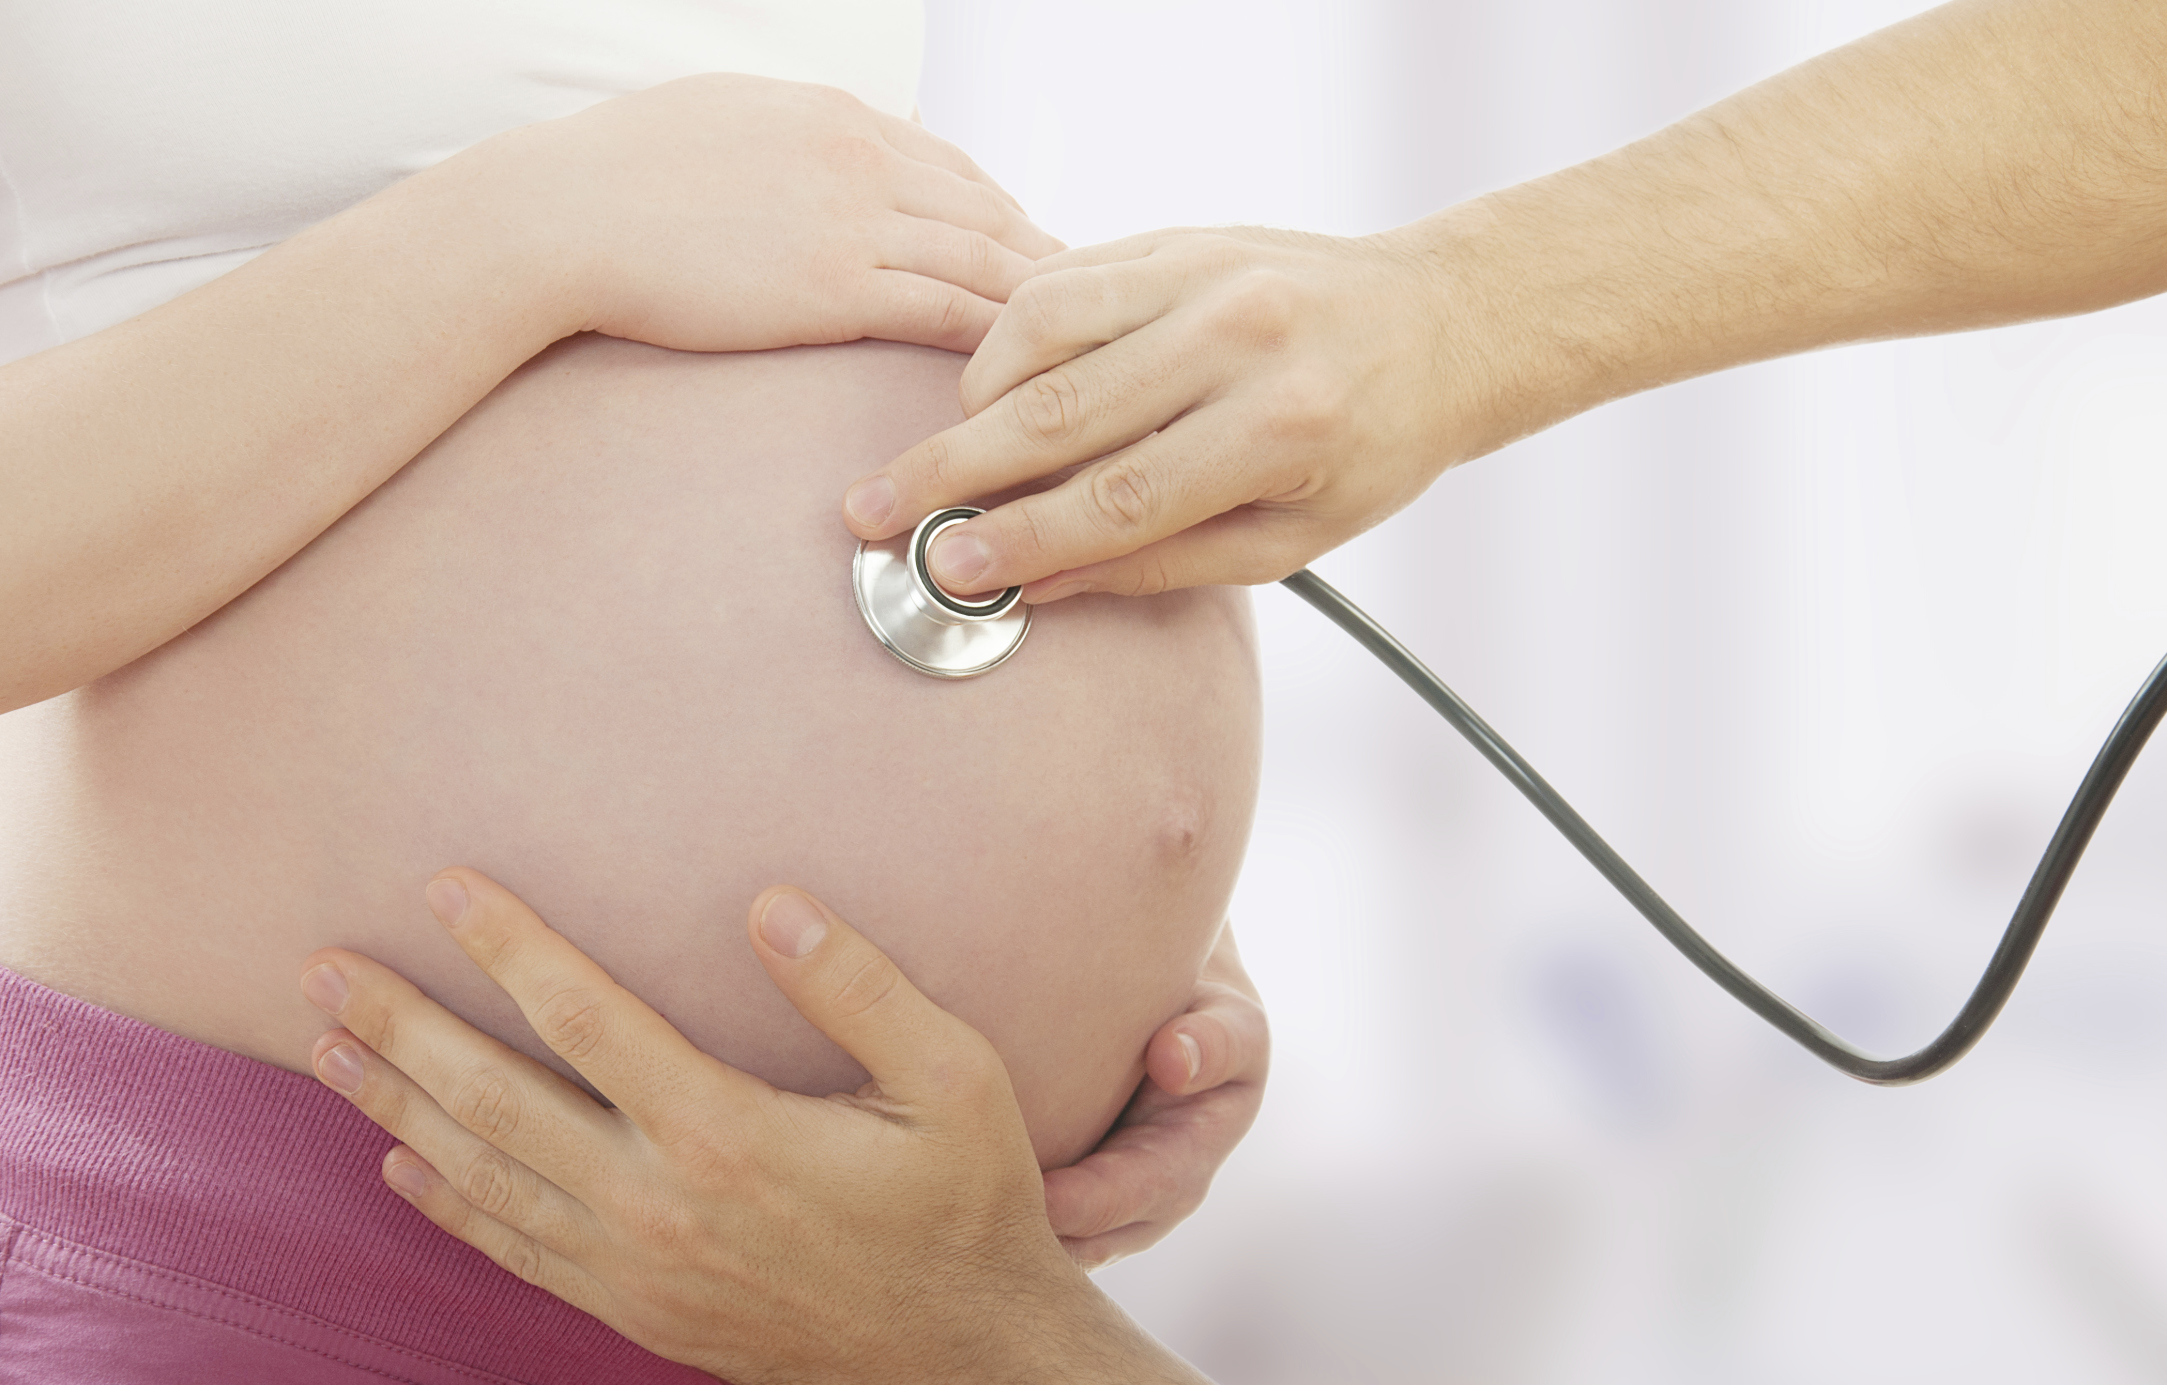 O cardápio da grávida com diabete gestacional ou hipertensa | Bebe.com.br